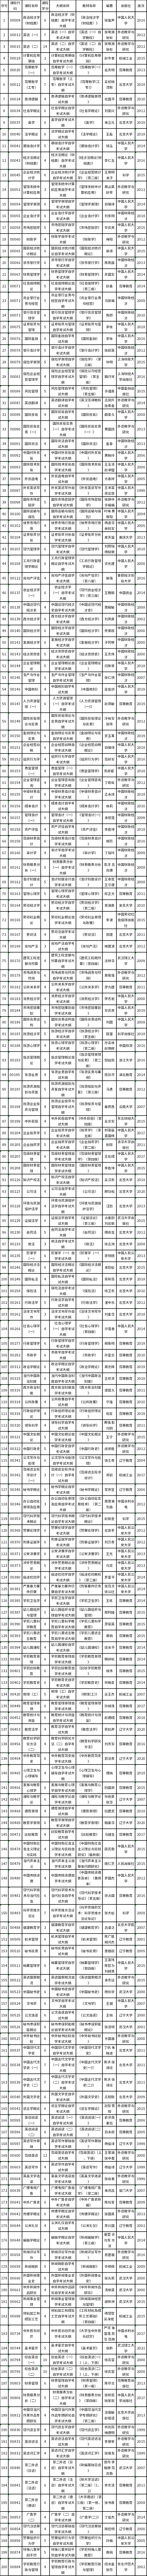 湖北省高等教育自学考试2022年下半年暨2022年上半年延期考试课程教材大纲及使用情况